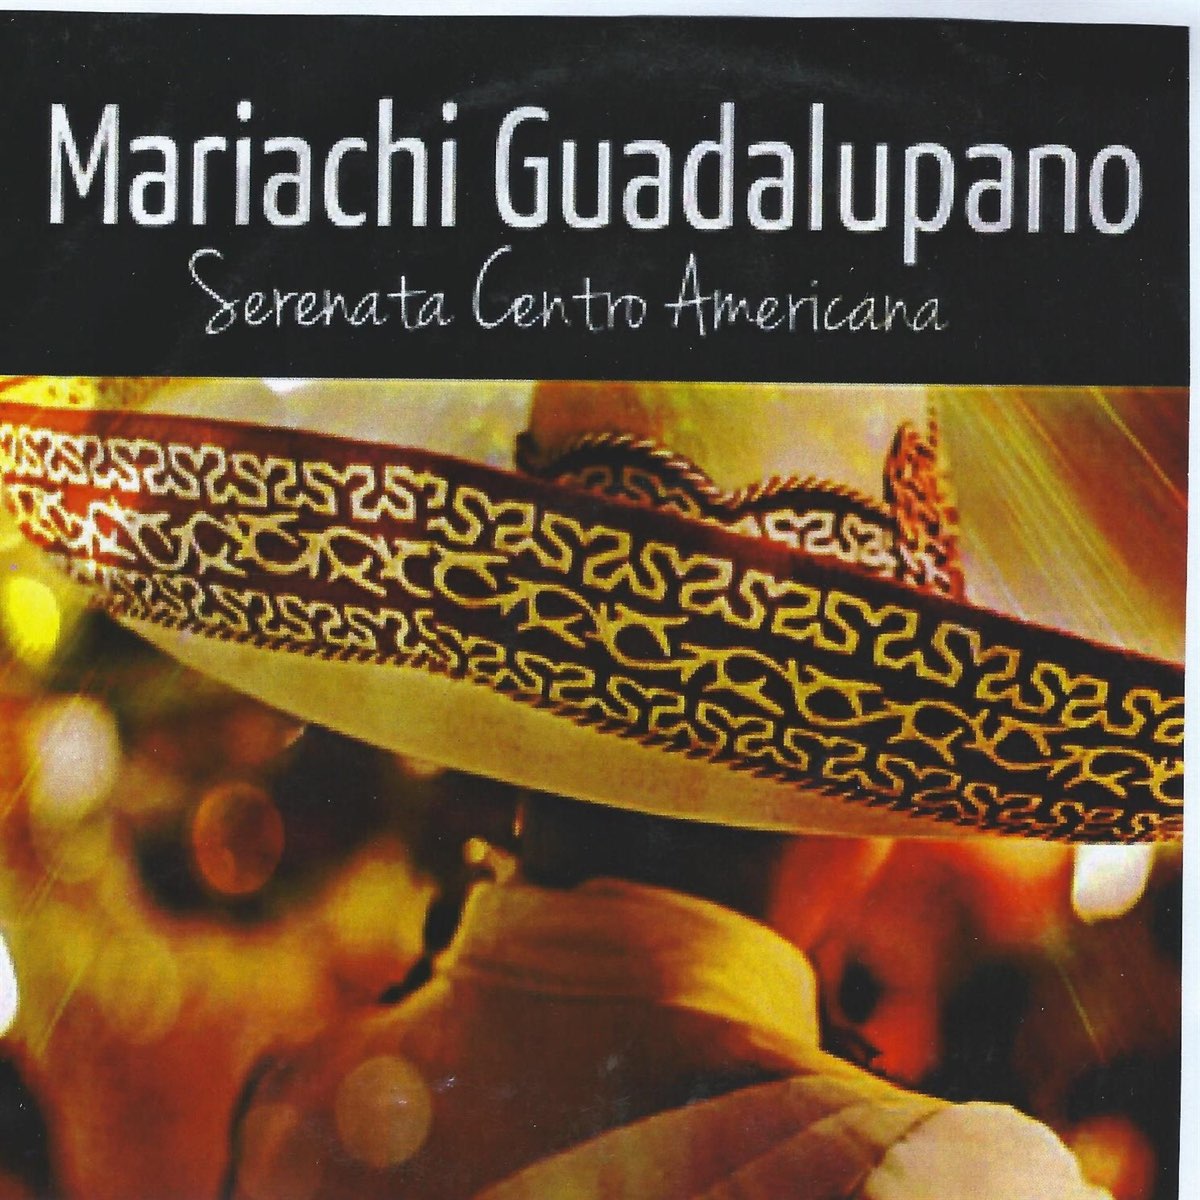 Cd Mariachi Guadalupano-serenata centro americana 1200x1200bf-60